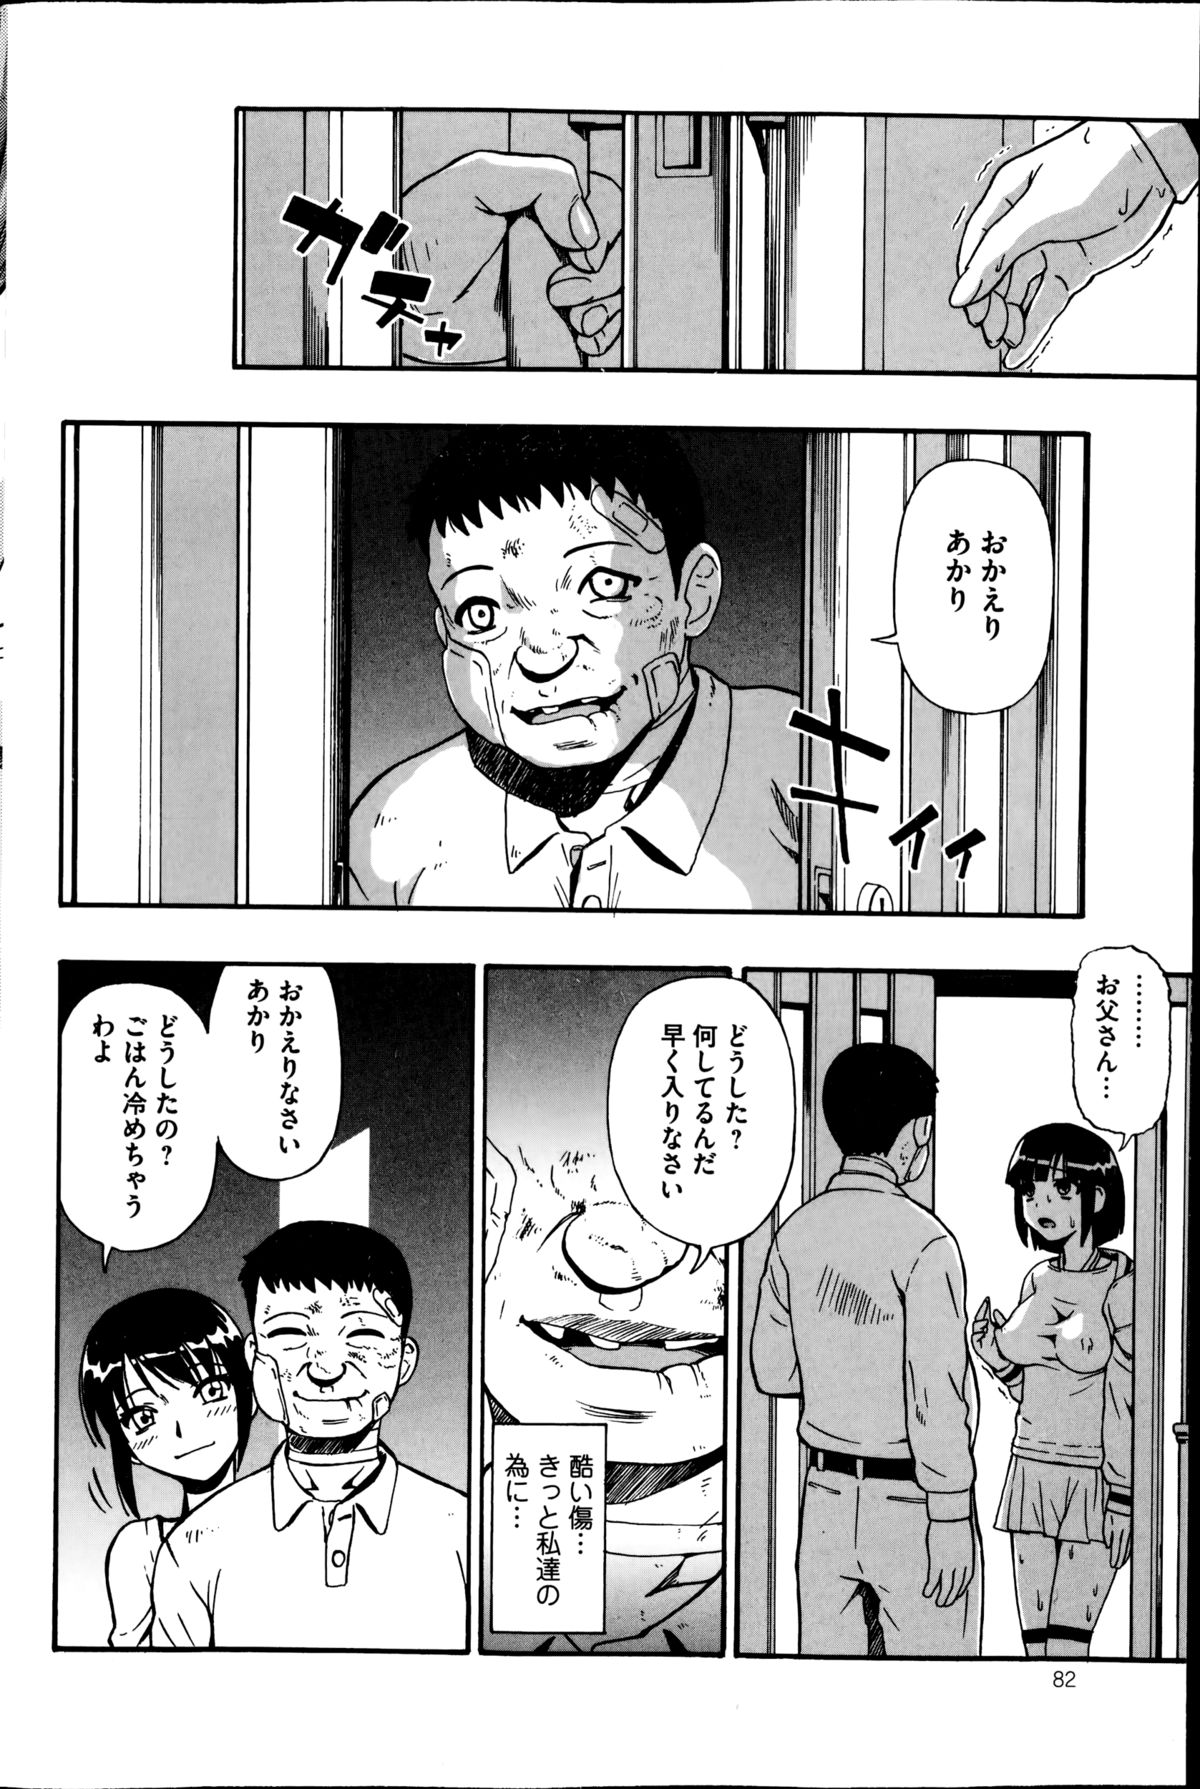 [オイスター] 屠場の団欒 第7話 (コミックMate 2014年12月号)